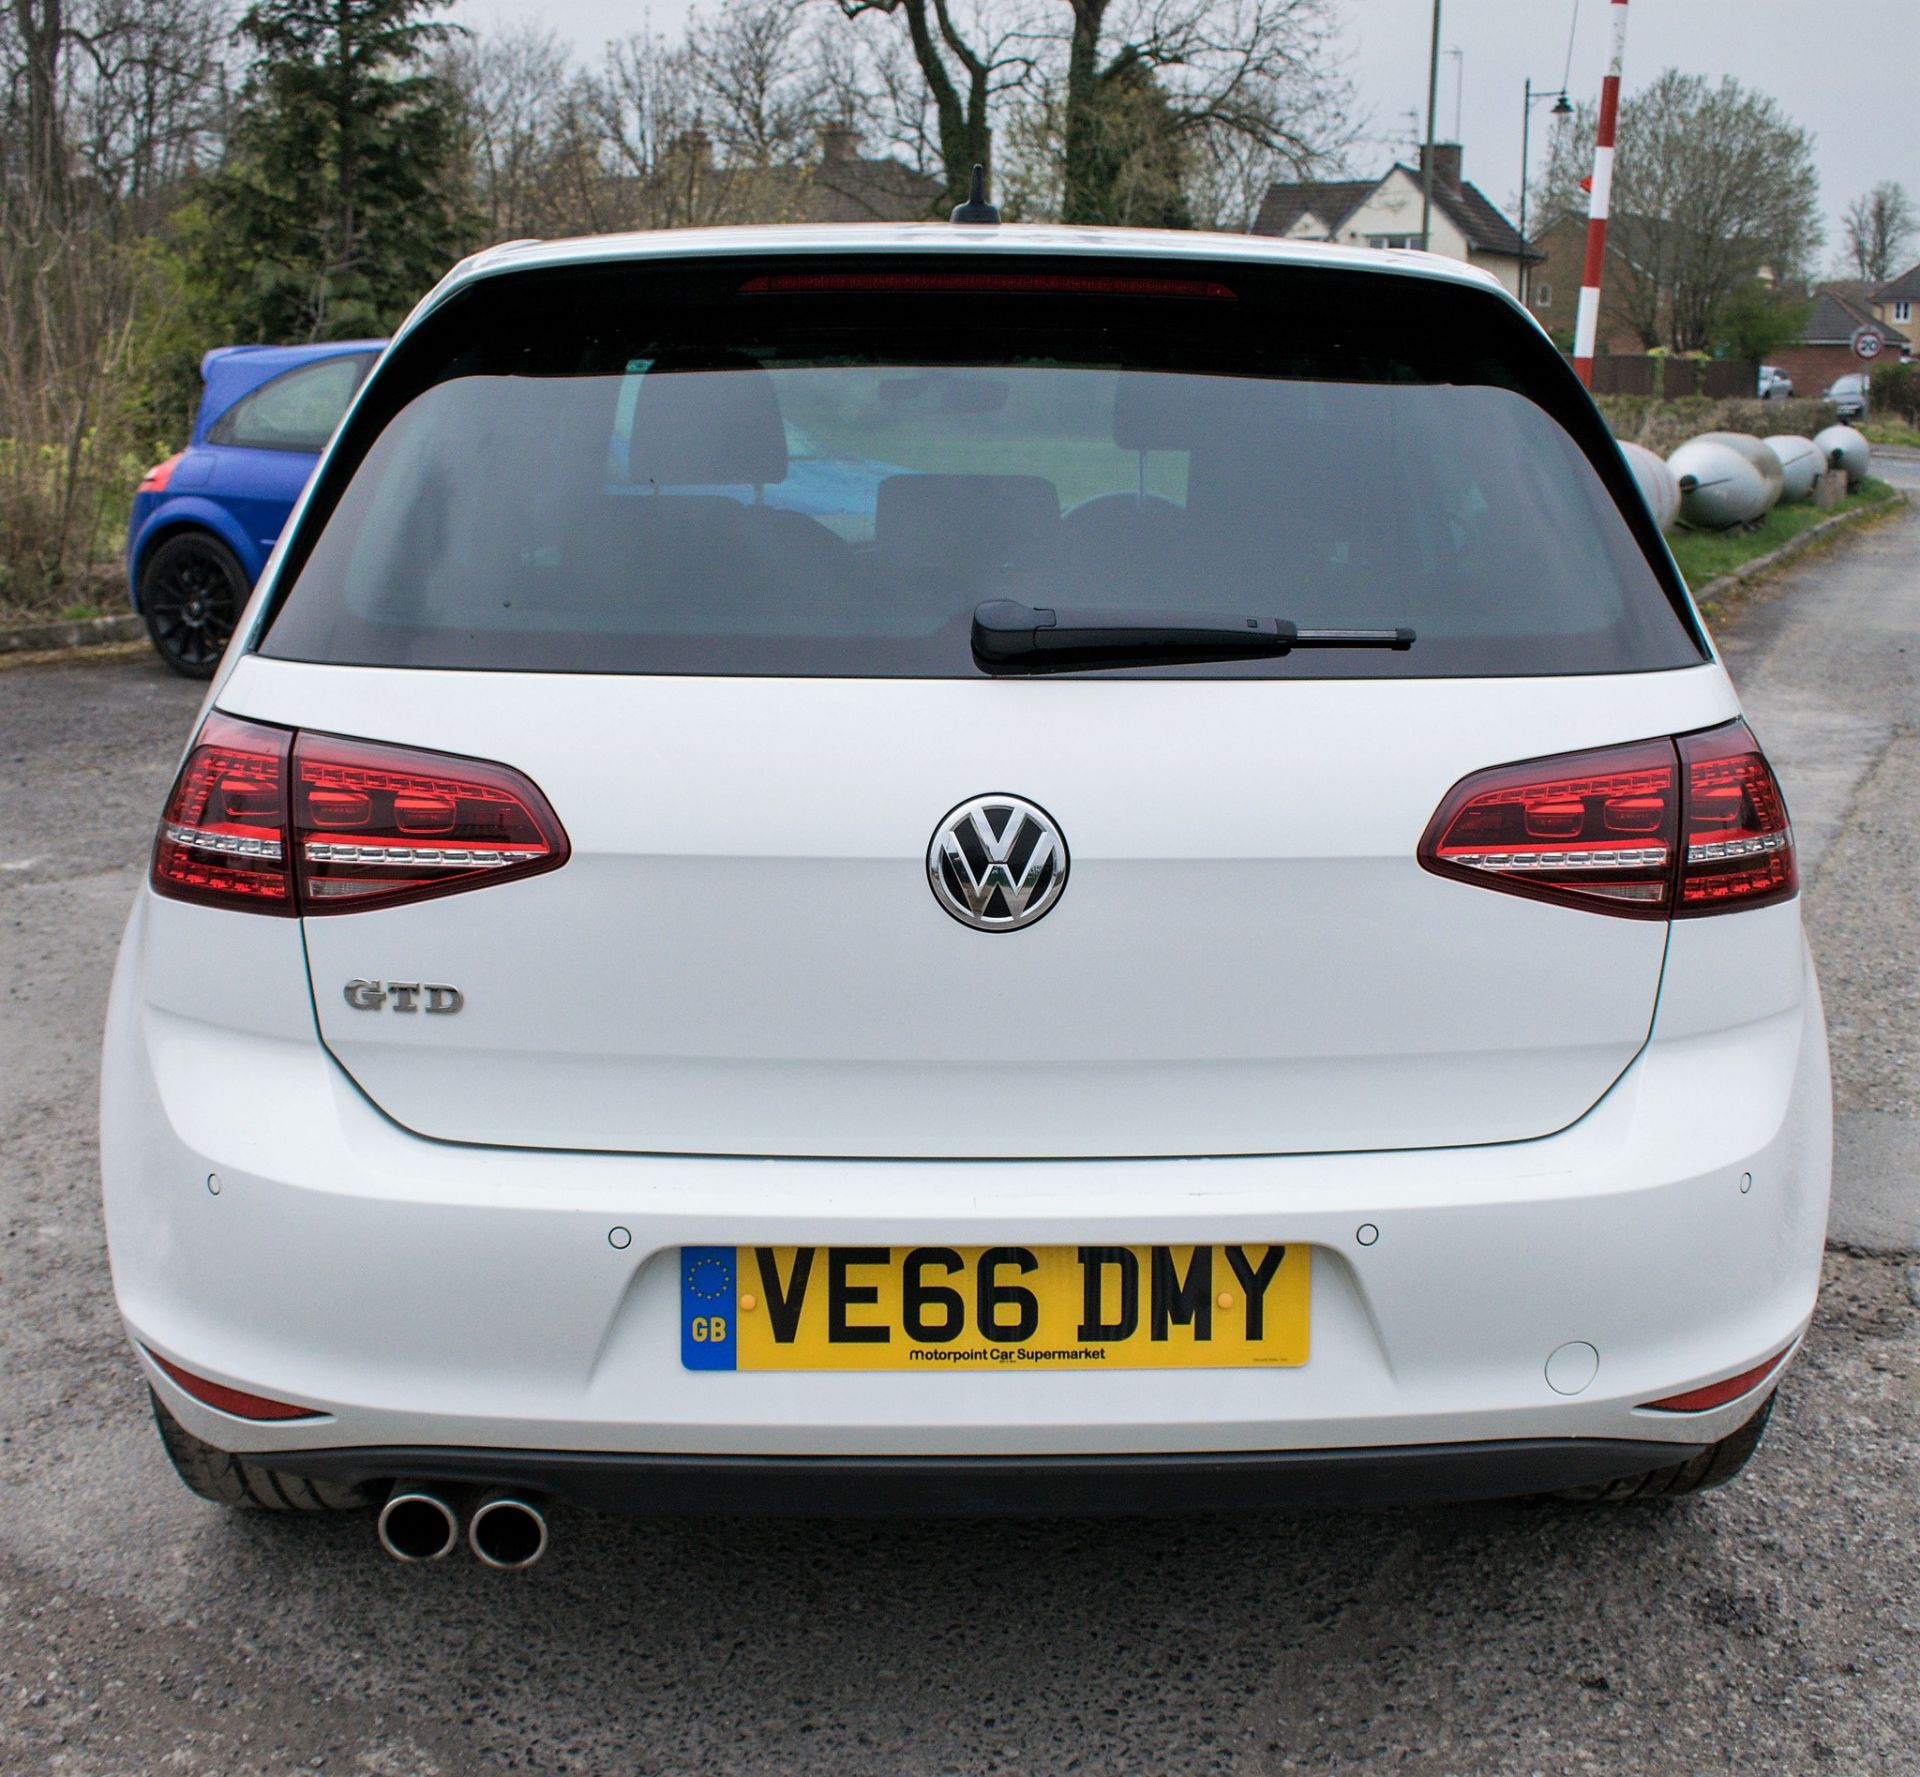 Volkswagen Golf GTD 2.0 5 door hatchback car Registration Number: VE66 DMY Date of Registration: - Image 6 of 13